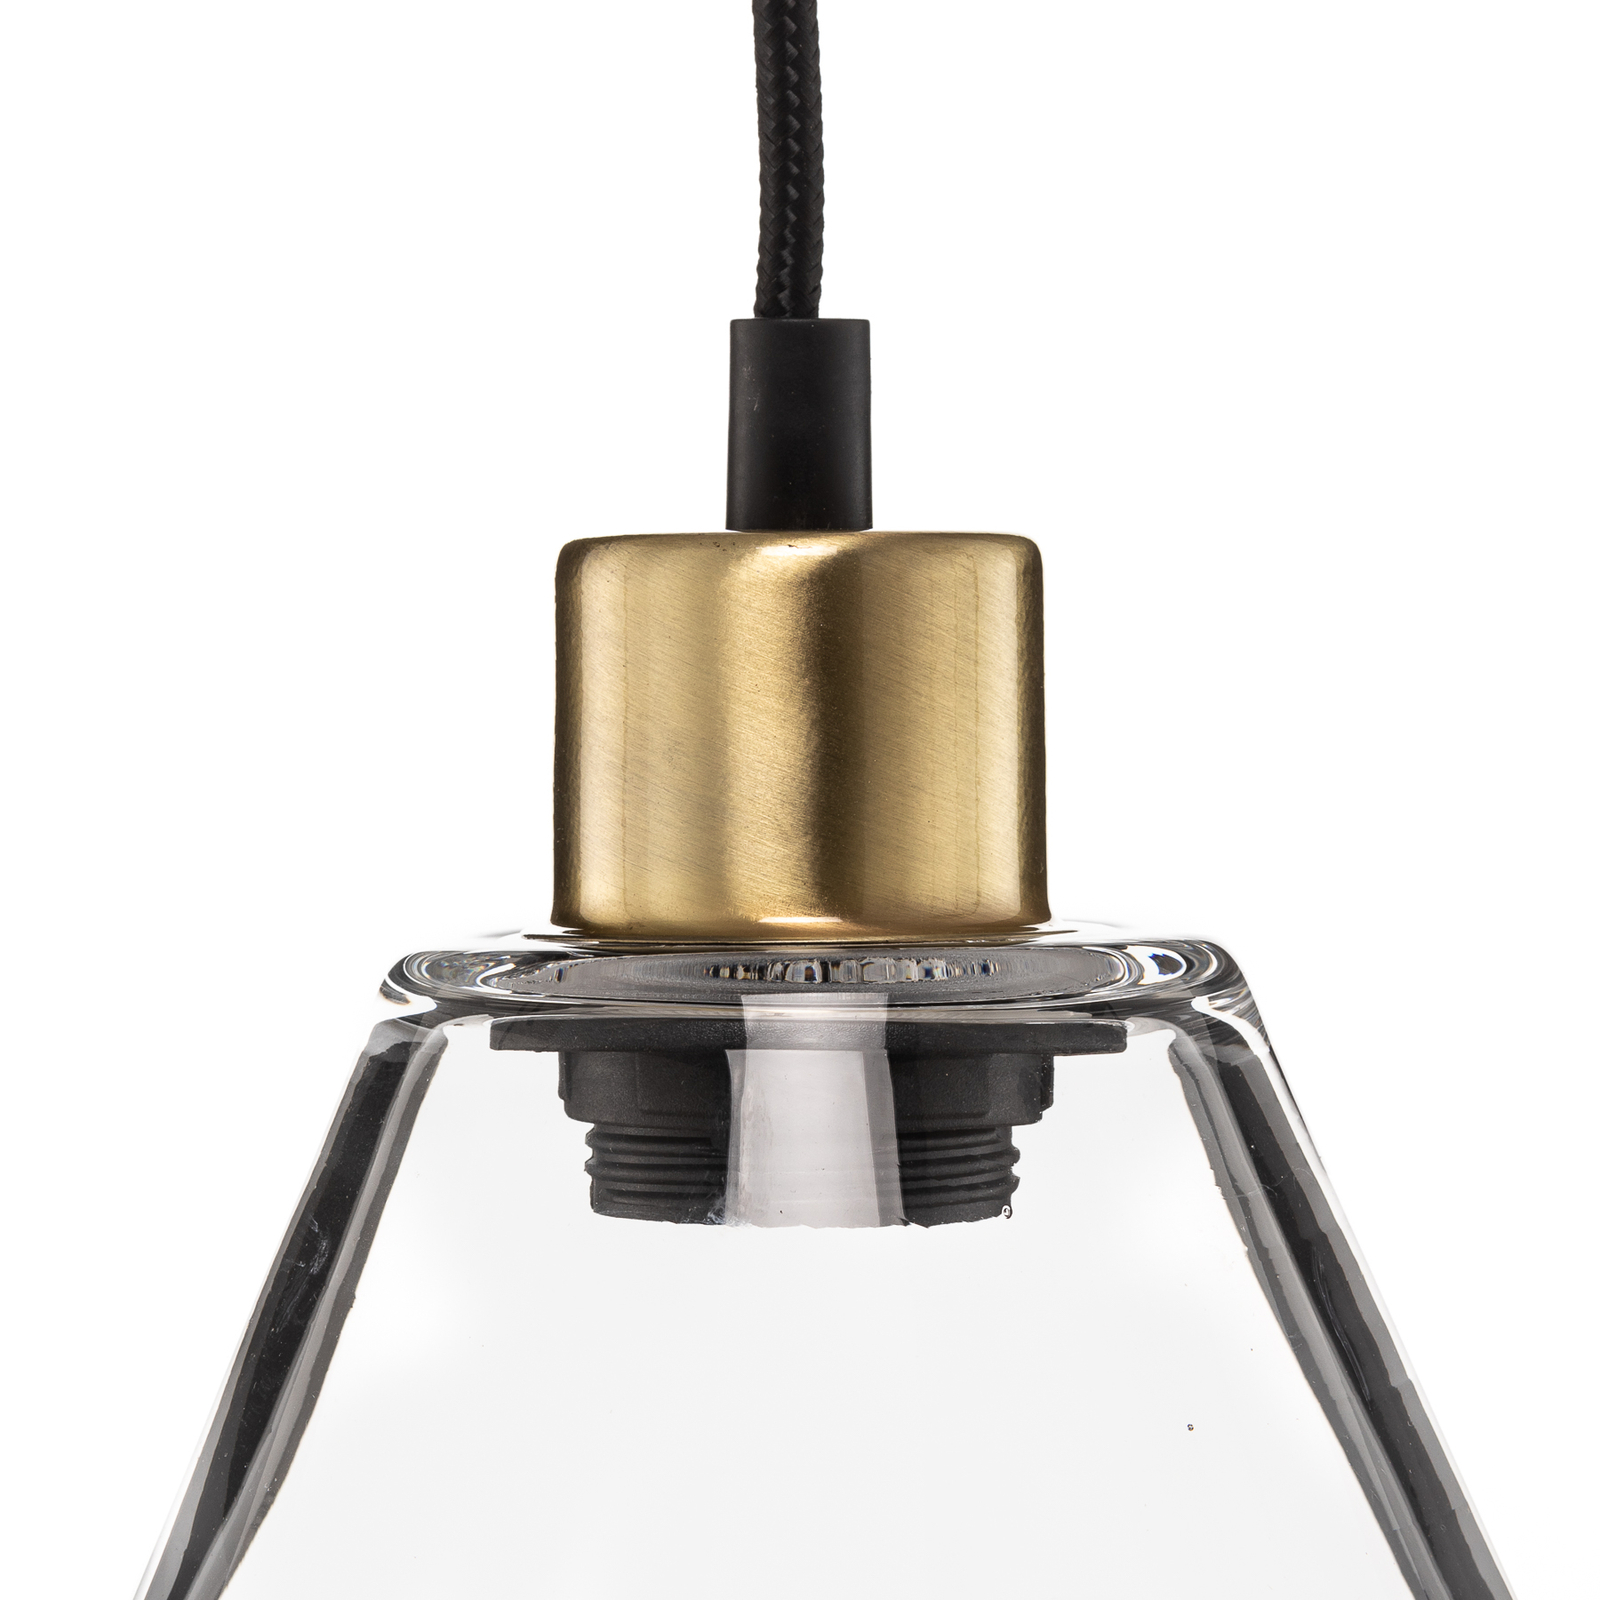 Lonceng hanglamp van helder handgeblazen glas